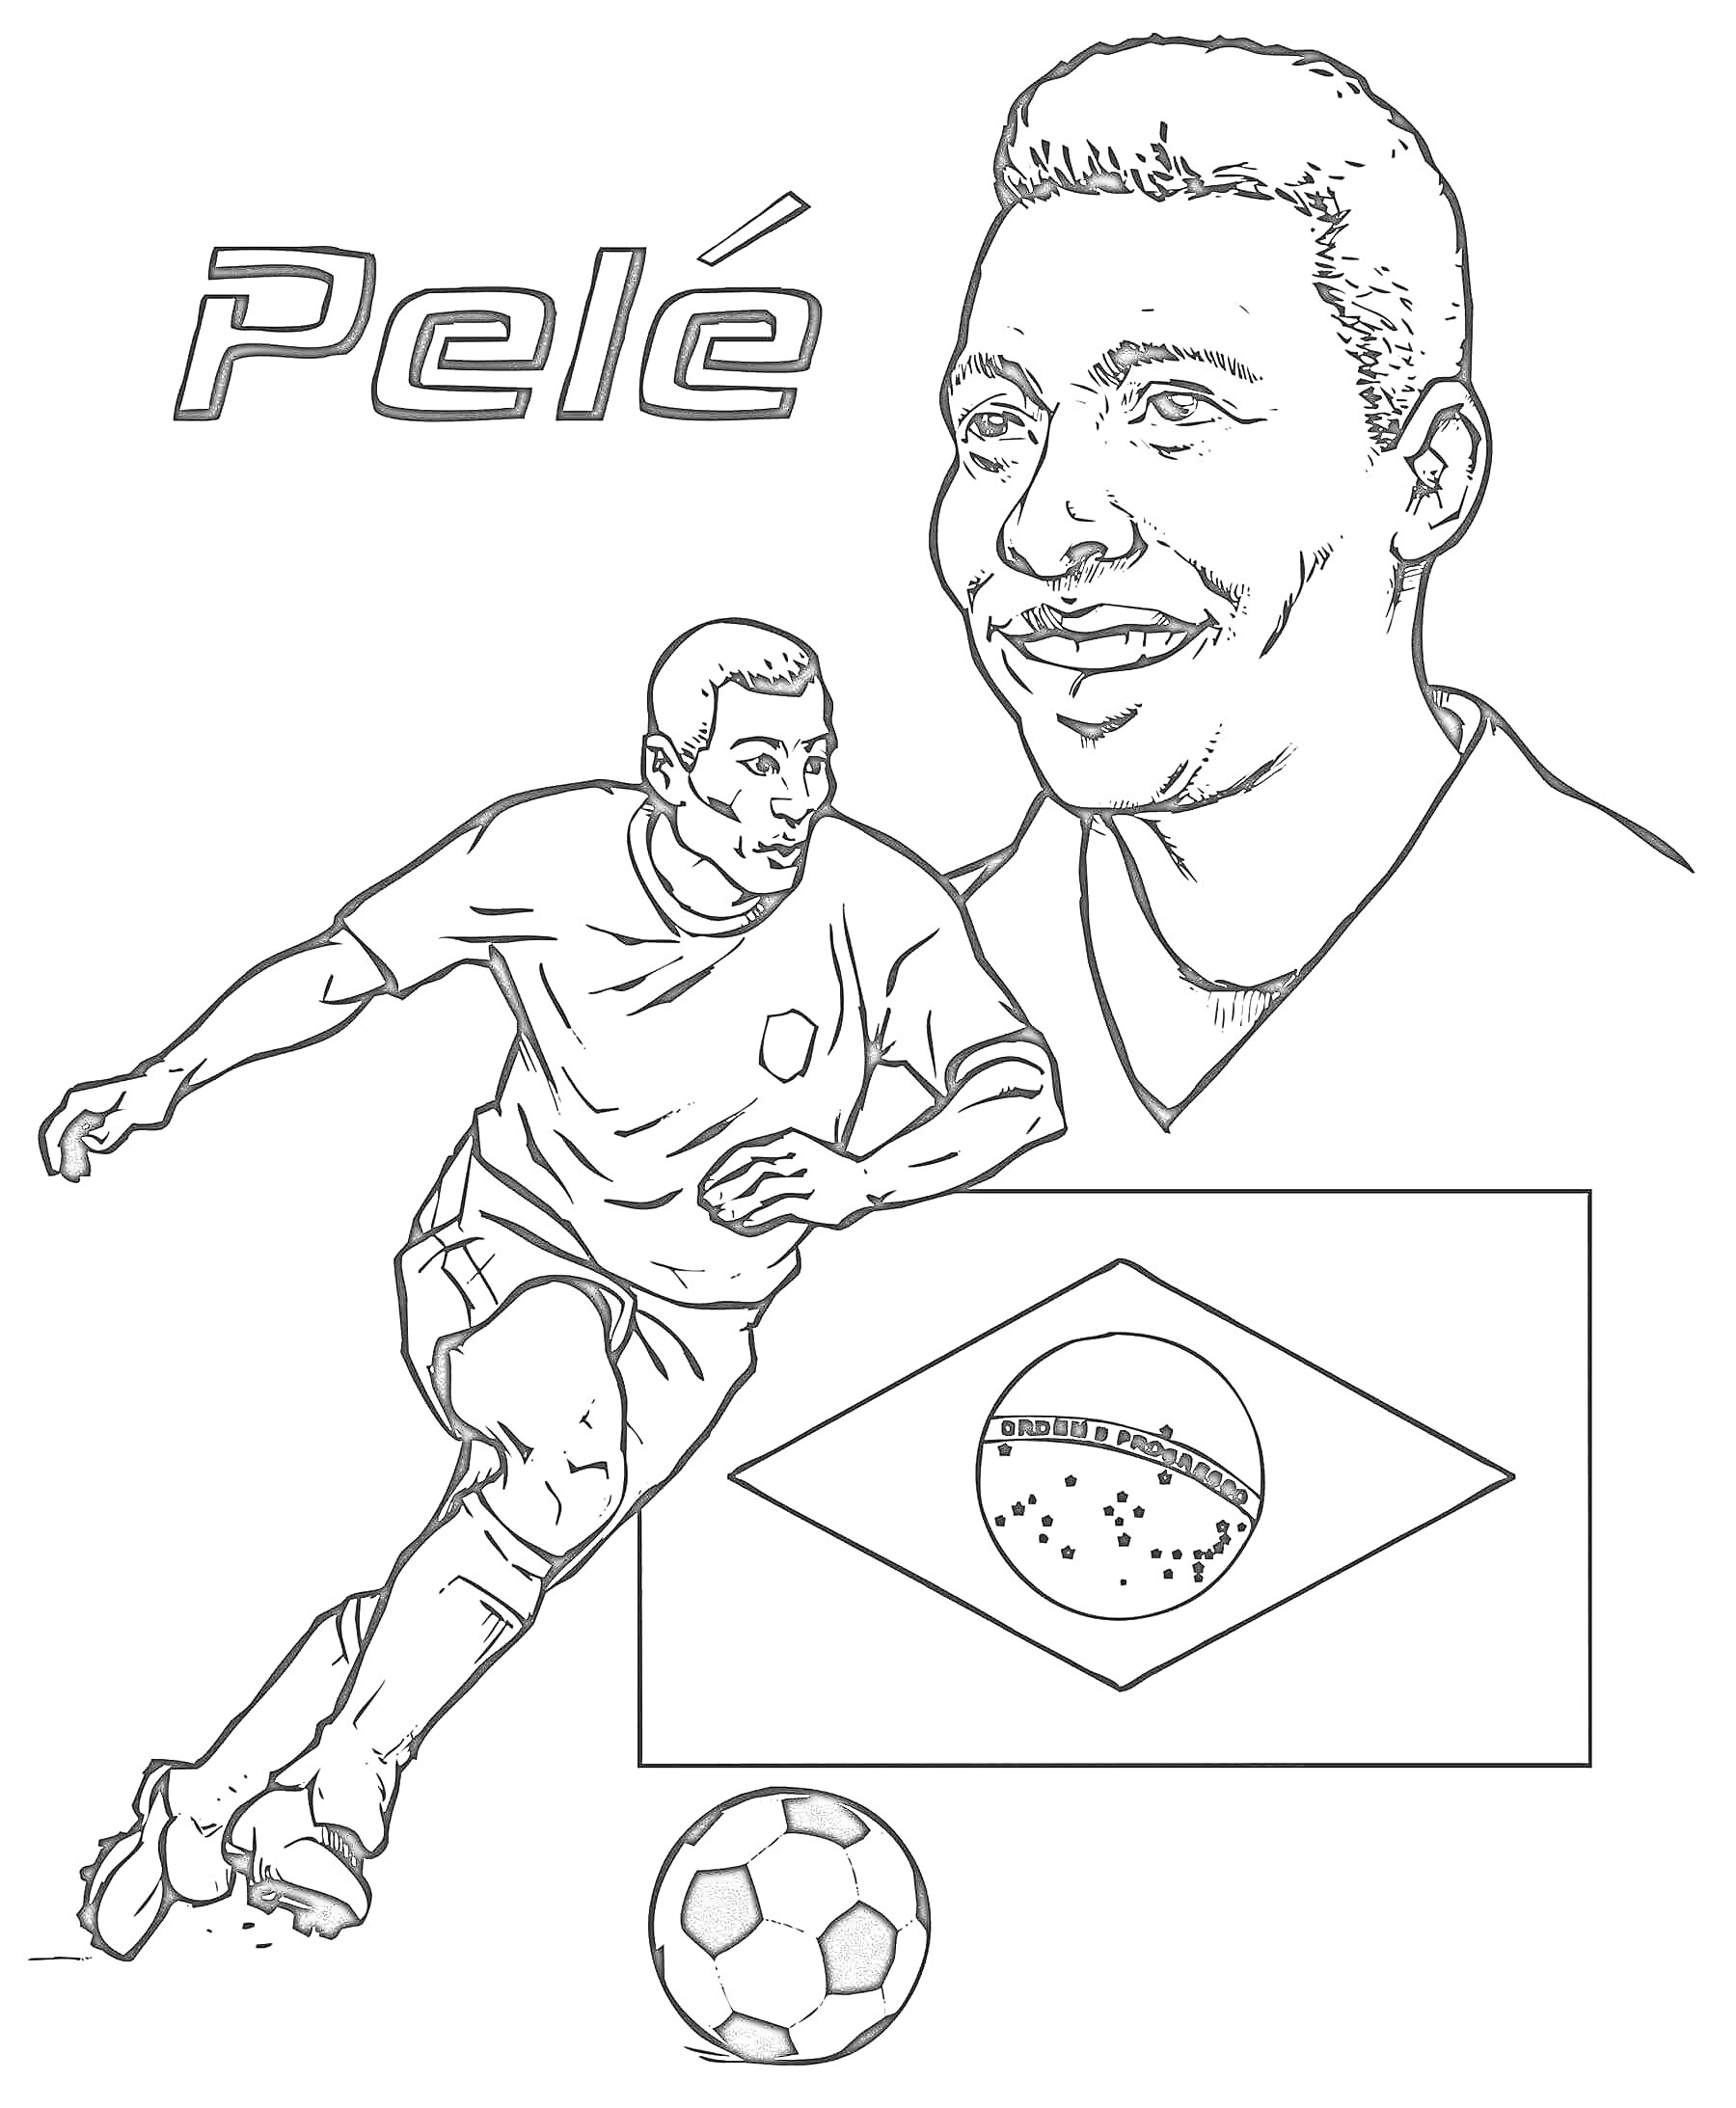 Футболист на поле, портрет футболиста, флаг Бразилии, мяч